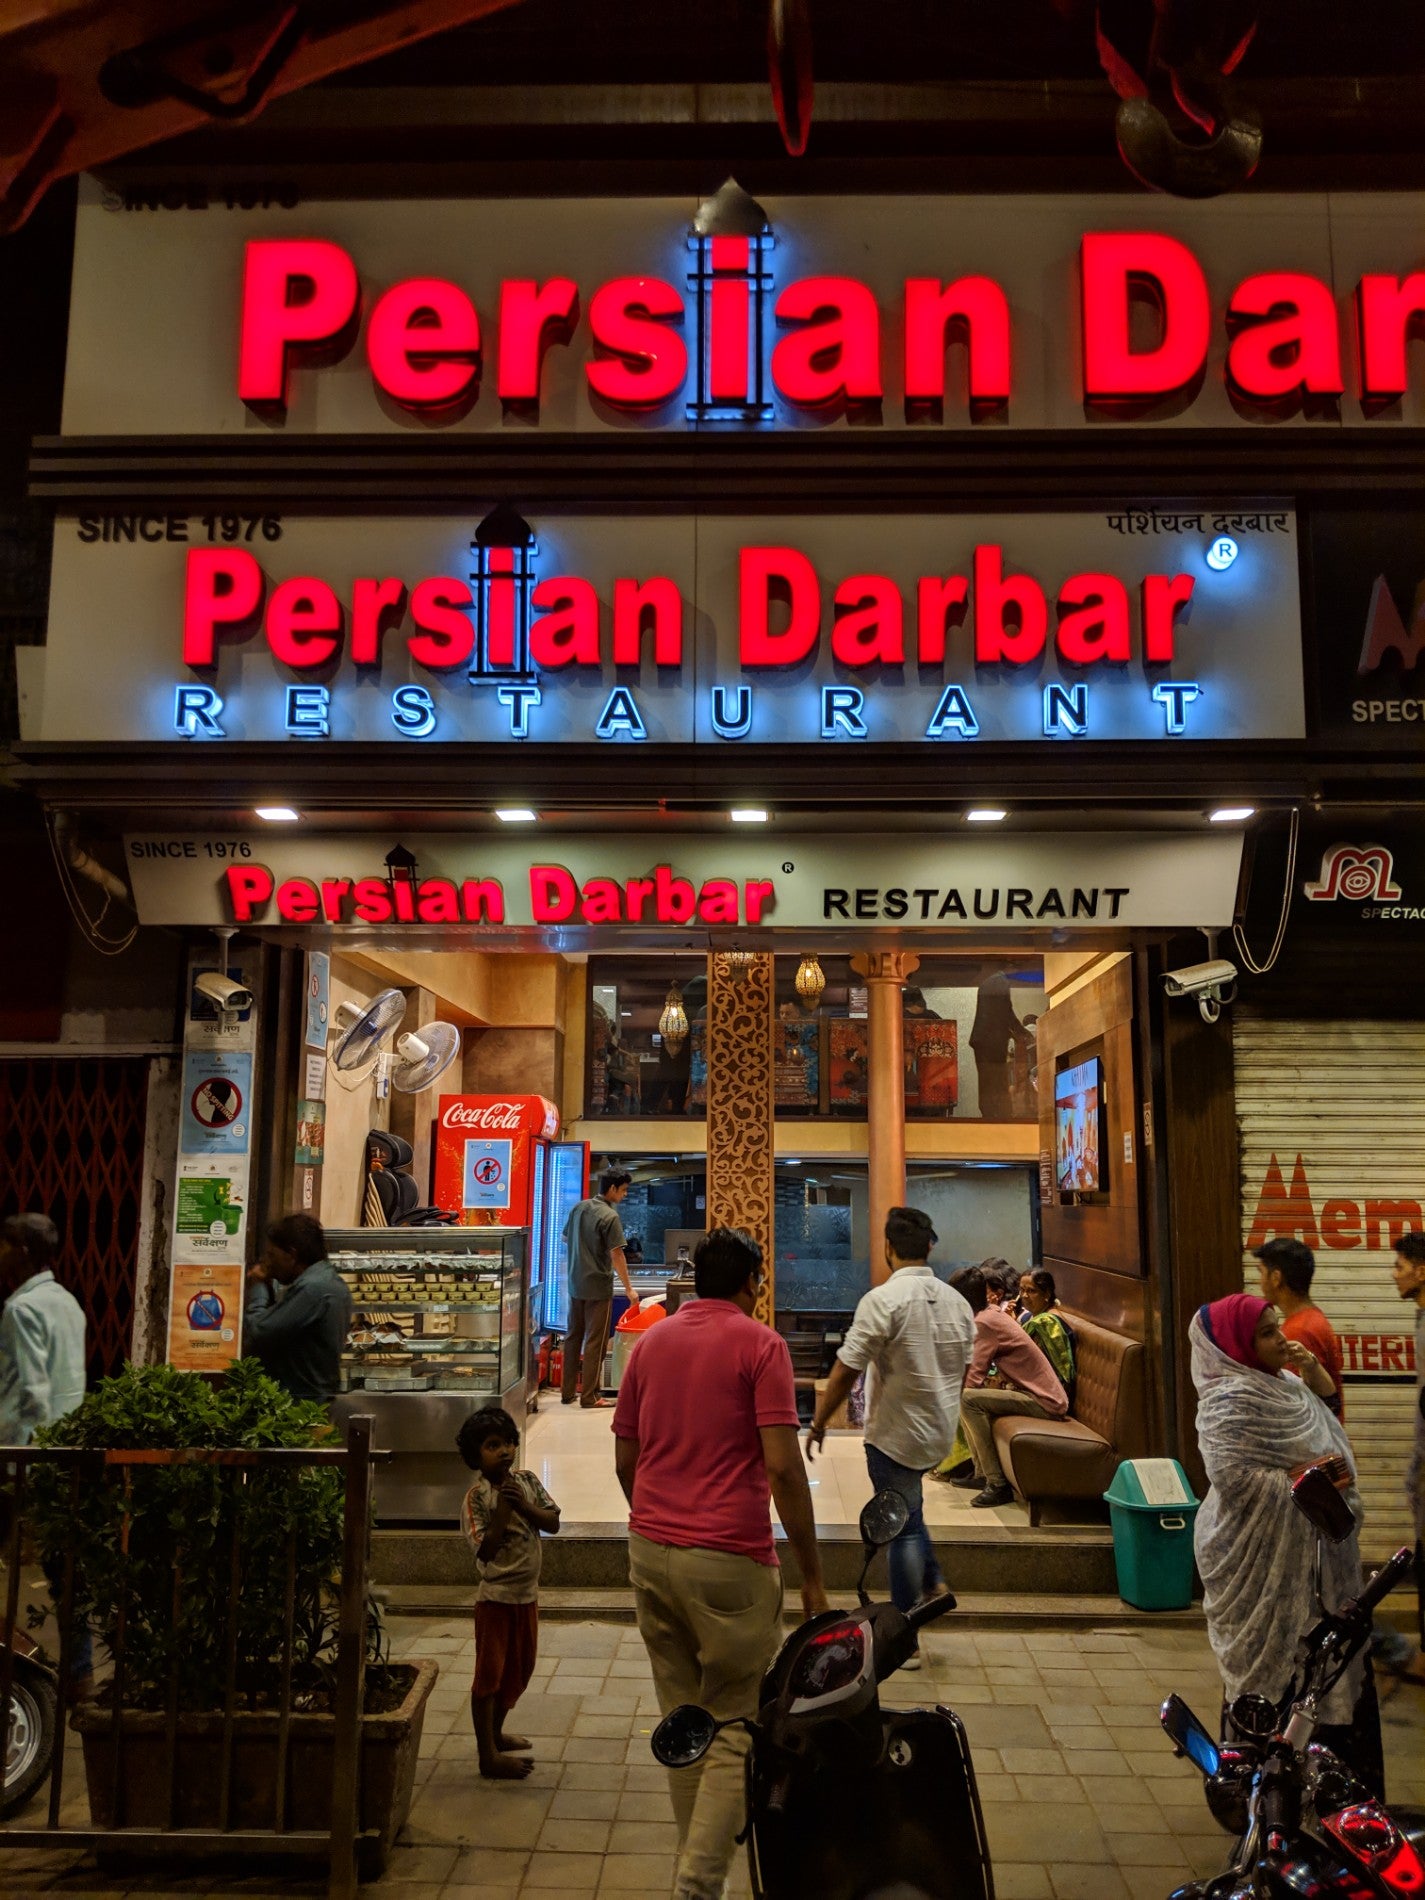 Persian Darbar